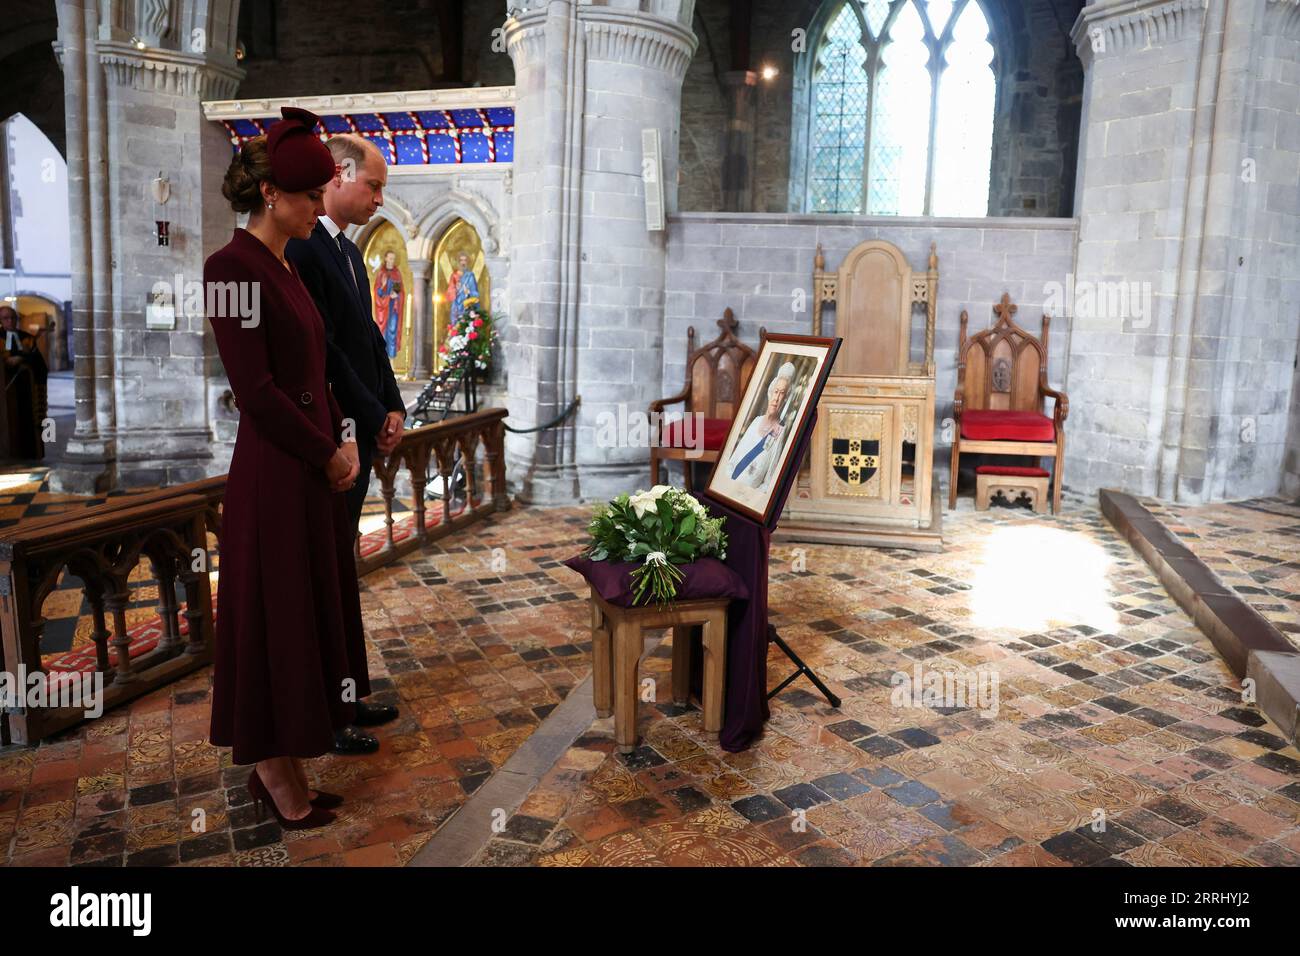 Der Prinz und die Prinzessin von Wales besuchen einen Gottesdienst in der St. Davids Cathedral in Haverfordwest, Pembrokeshire, Westwales, wo sie an das Leben der verstorbenen Königin Elisabeth II. Erinnern, anlässlich des einjährigen Jahrestages ihres Todes. Bilddatum: Freitag, 8. September 2023. Stockfoto